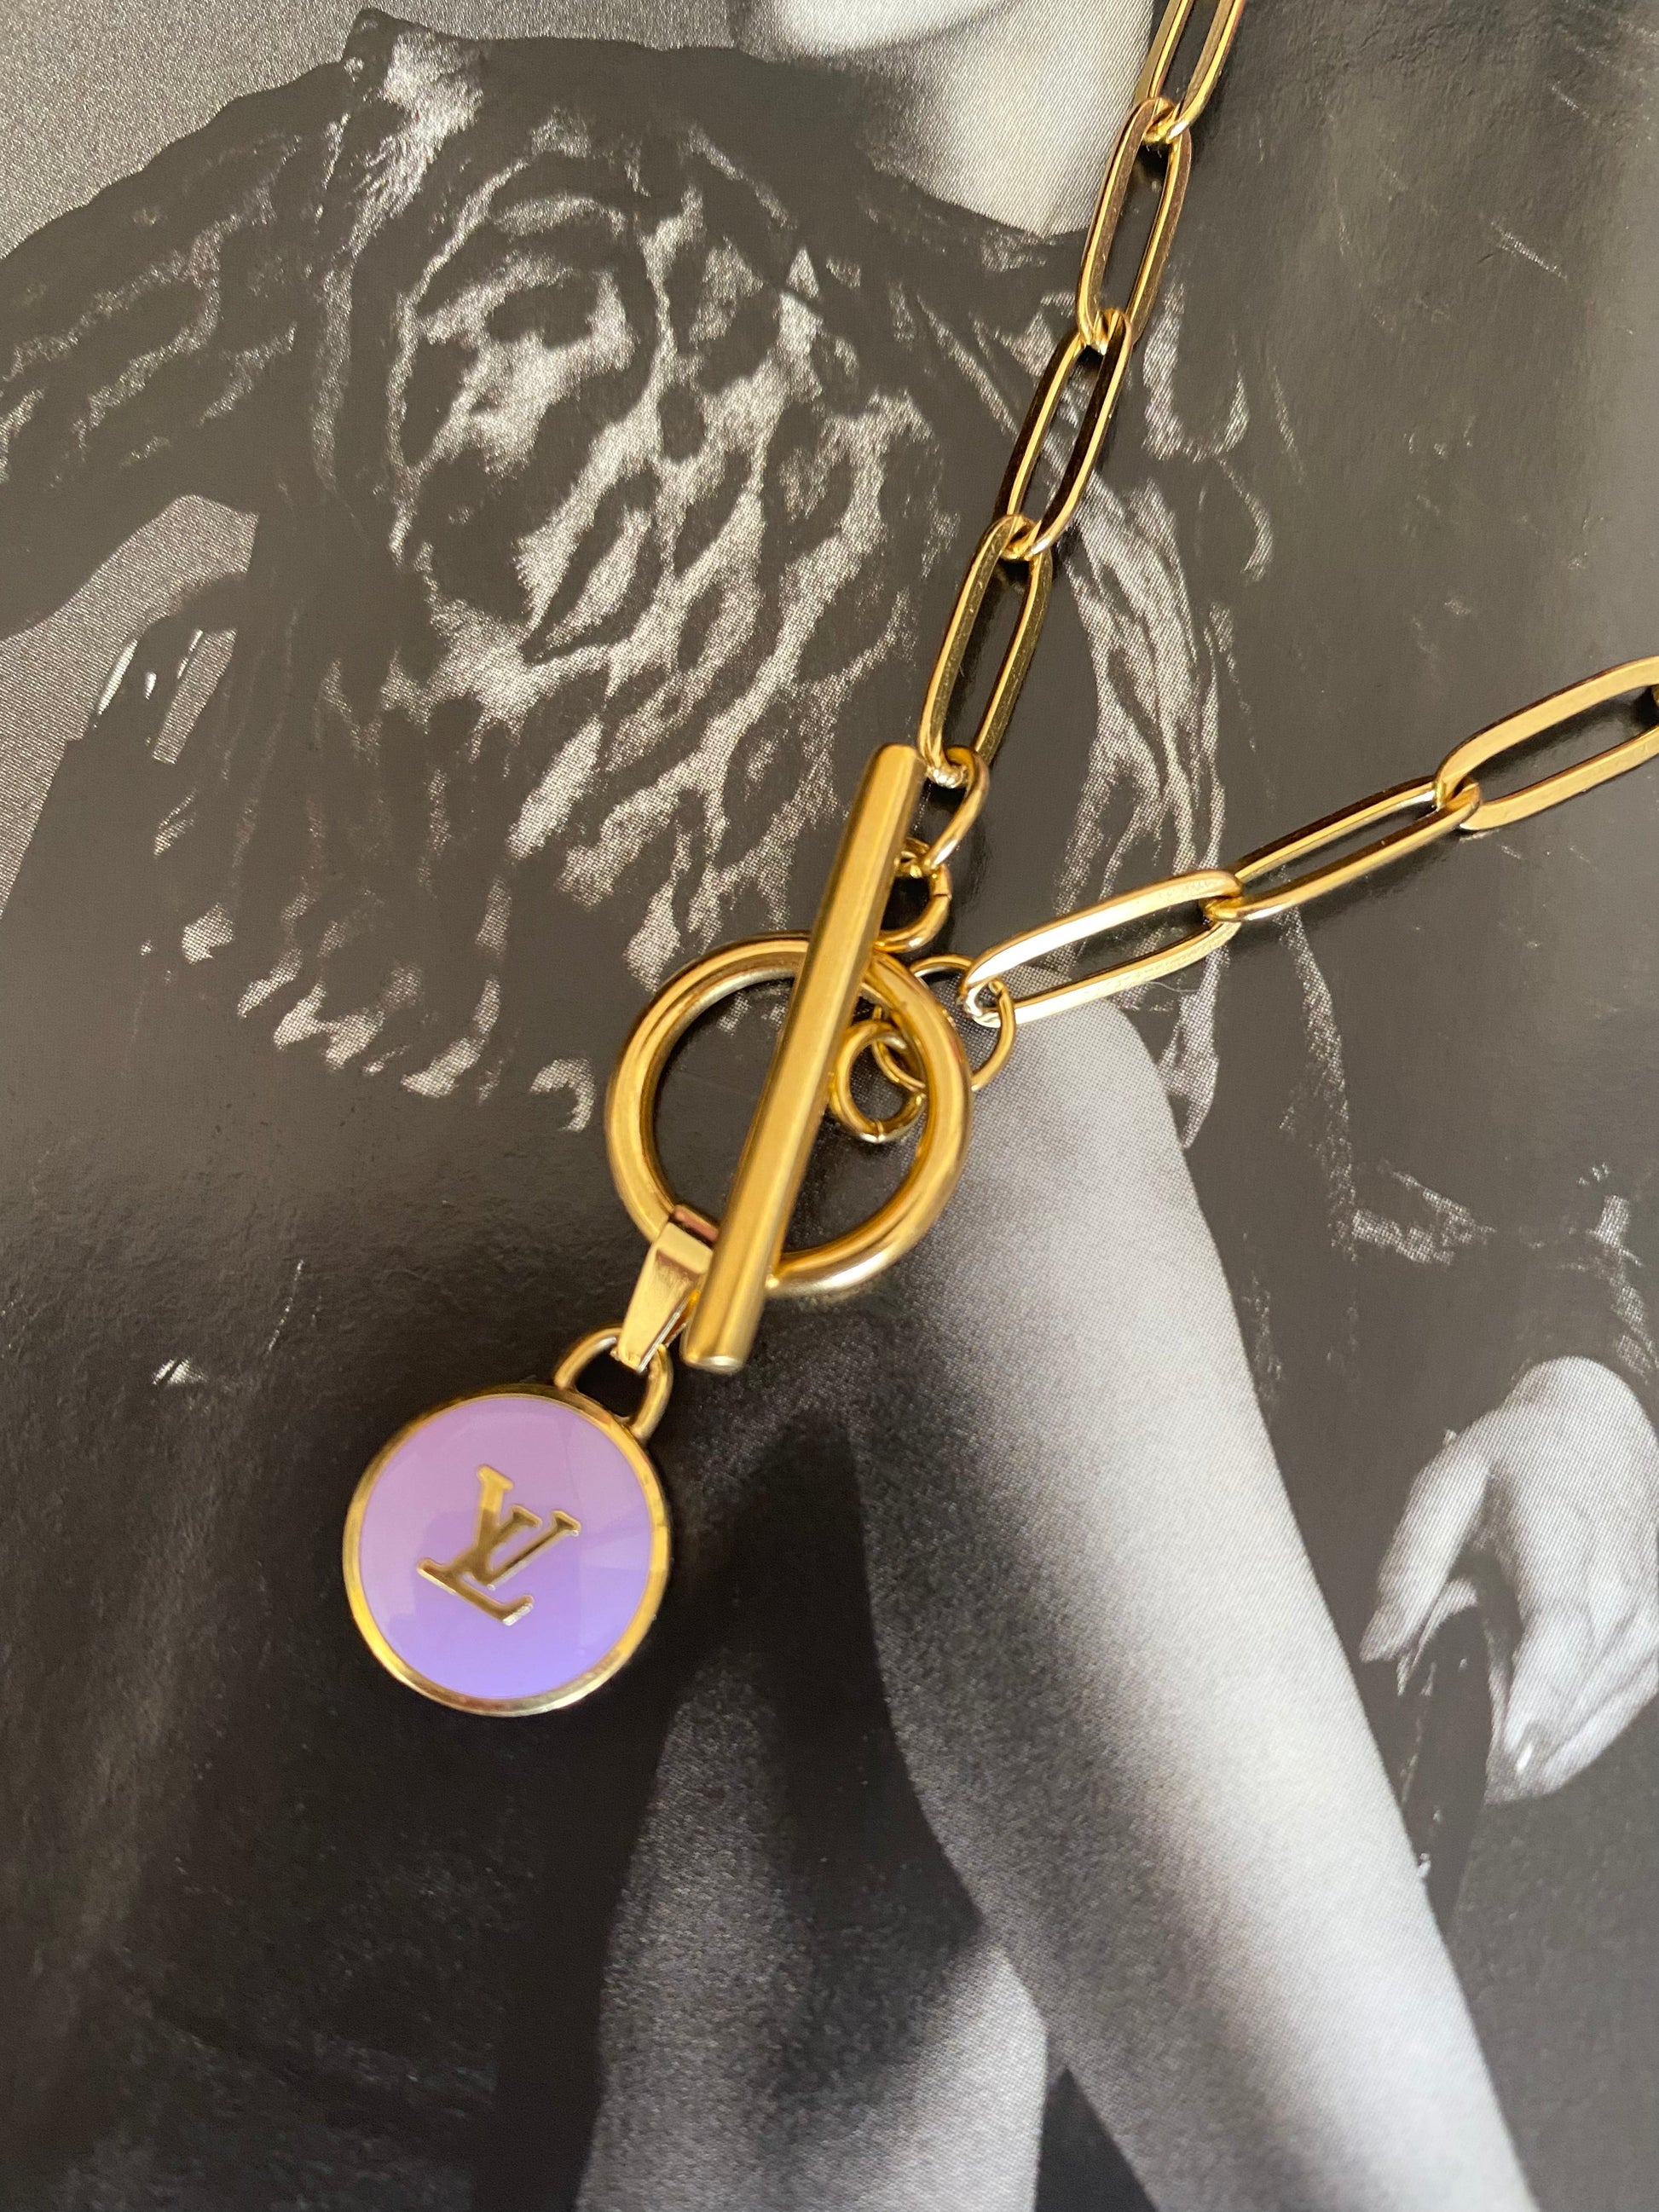 SOLD OUT Rework Vintage Louis Vuitton Pastille LV Charm Necklace